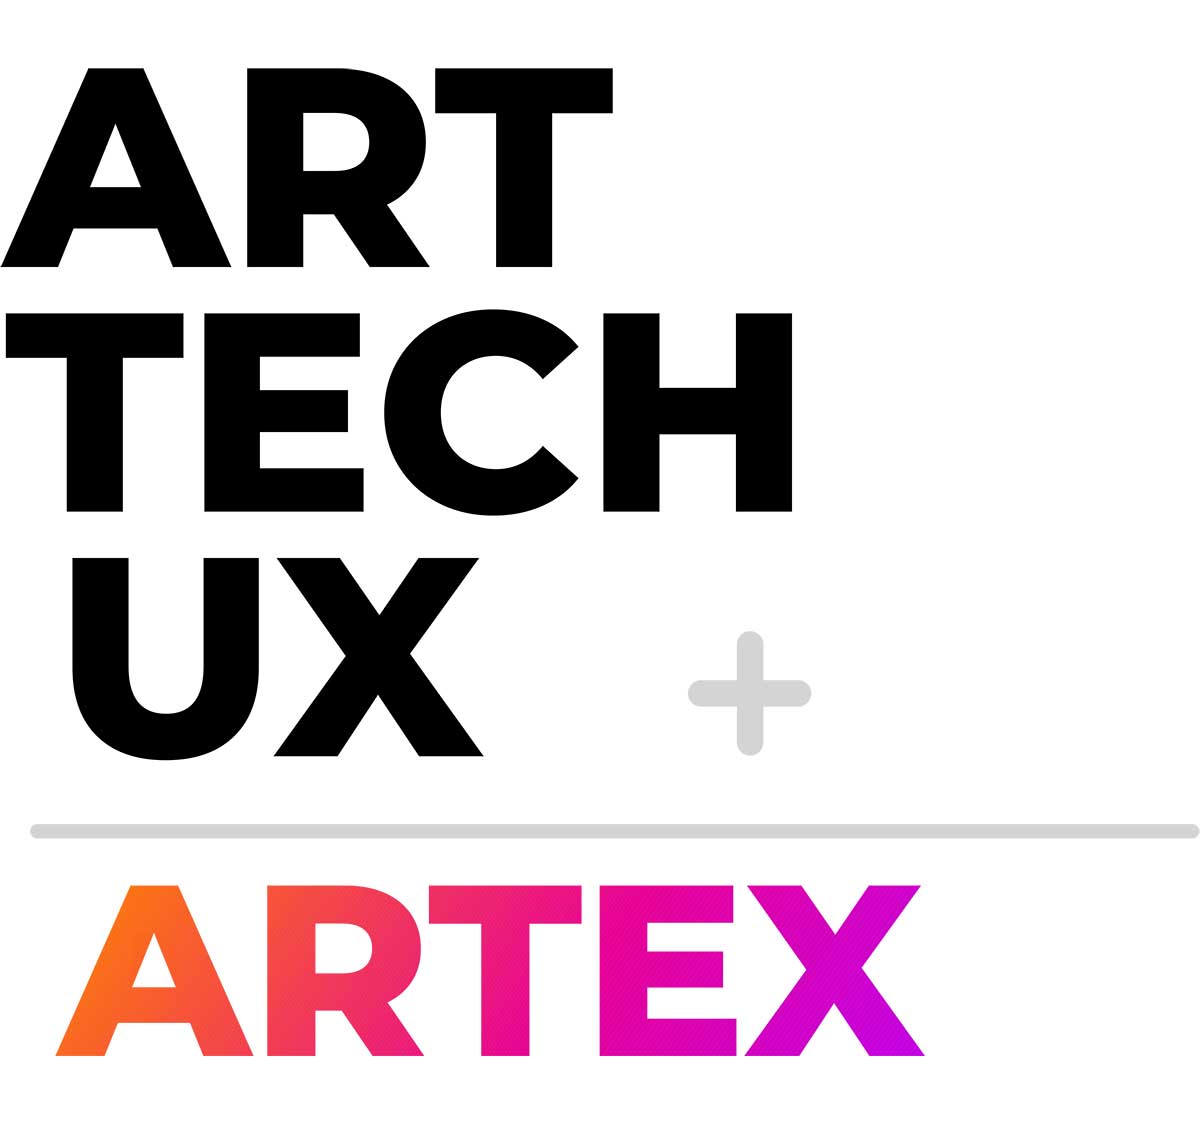 math formula: Art + technology = Artex